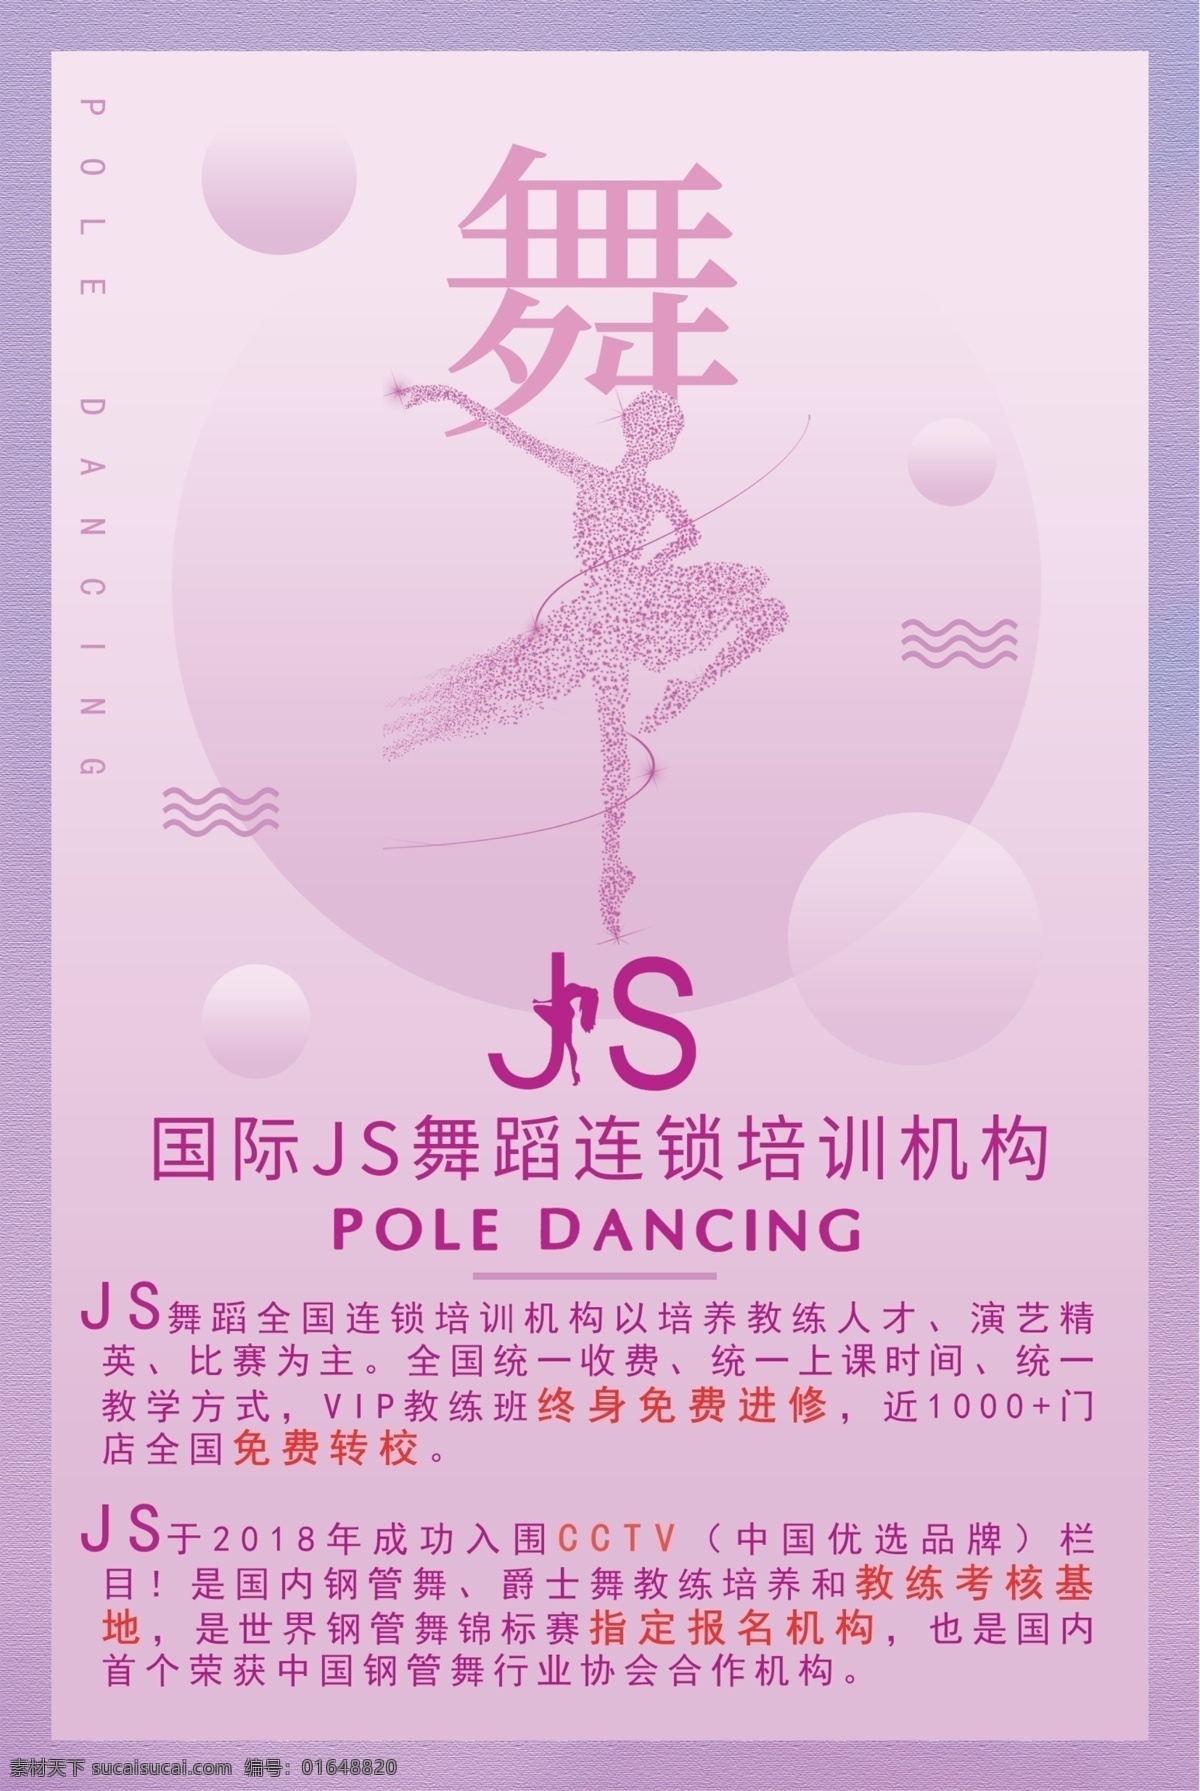 舞蹈 培训机构 宣传单 jslogo js 紫色 dm宣传单 舞蹈培训机构 原创共享